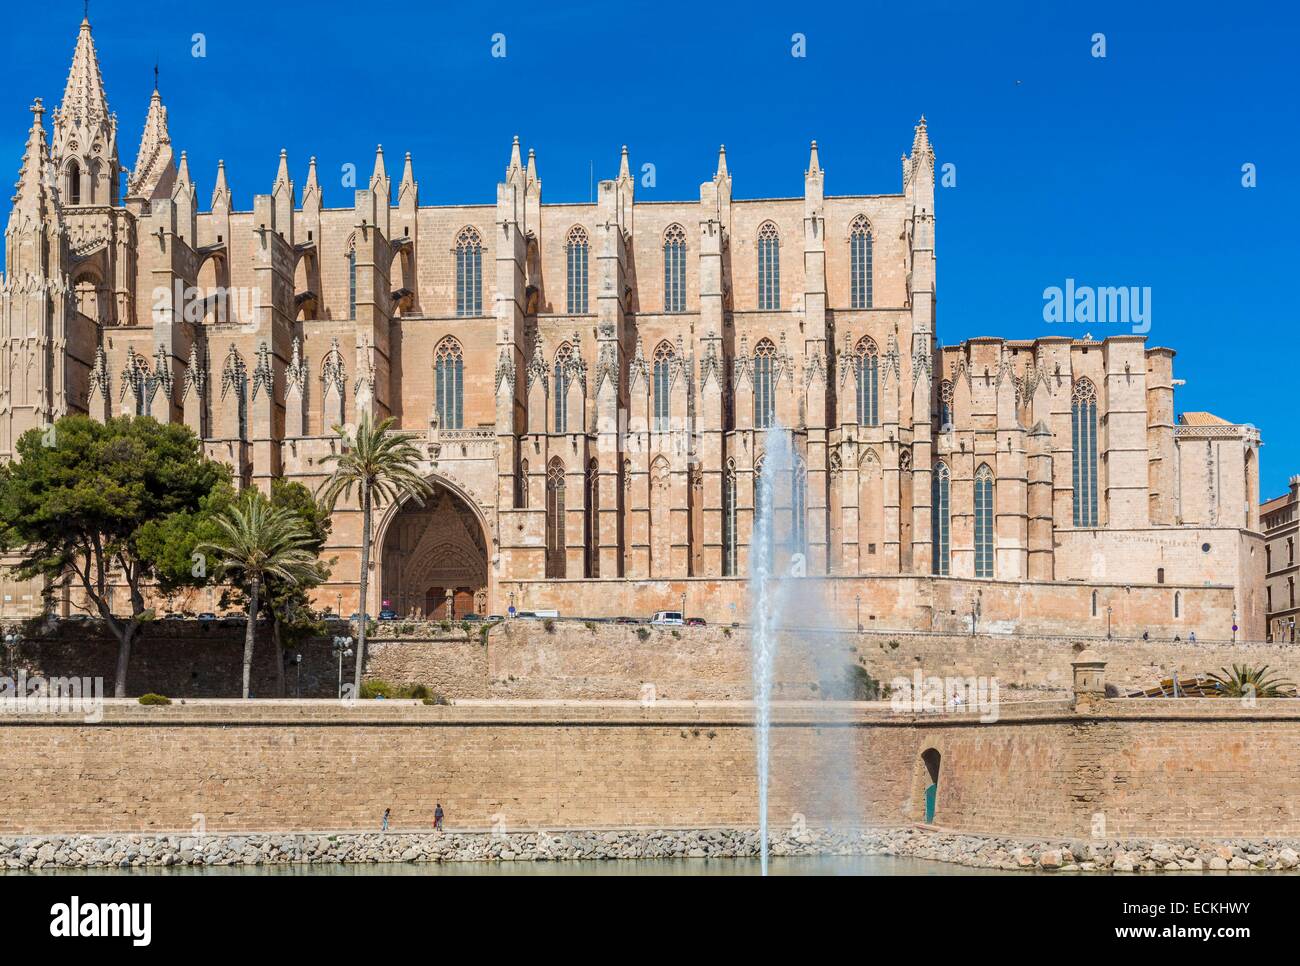 España, Islas Baleares, Mallorca, Palma de Mallorca, la catedral (La Seu) construido entre 1229 y 1601 y del gótico catalán Foto de stock